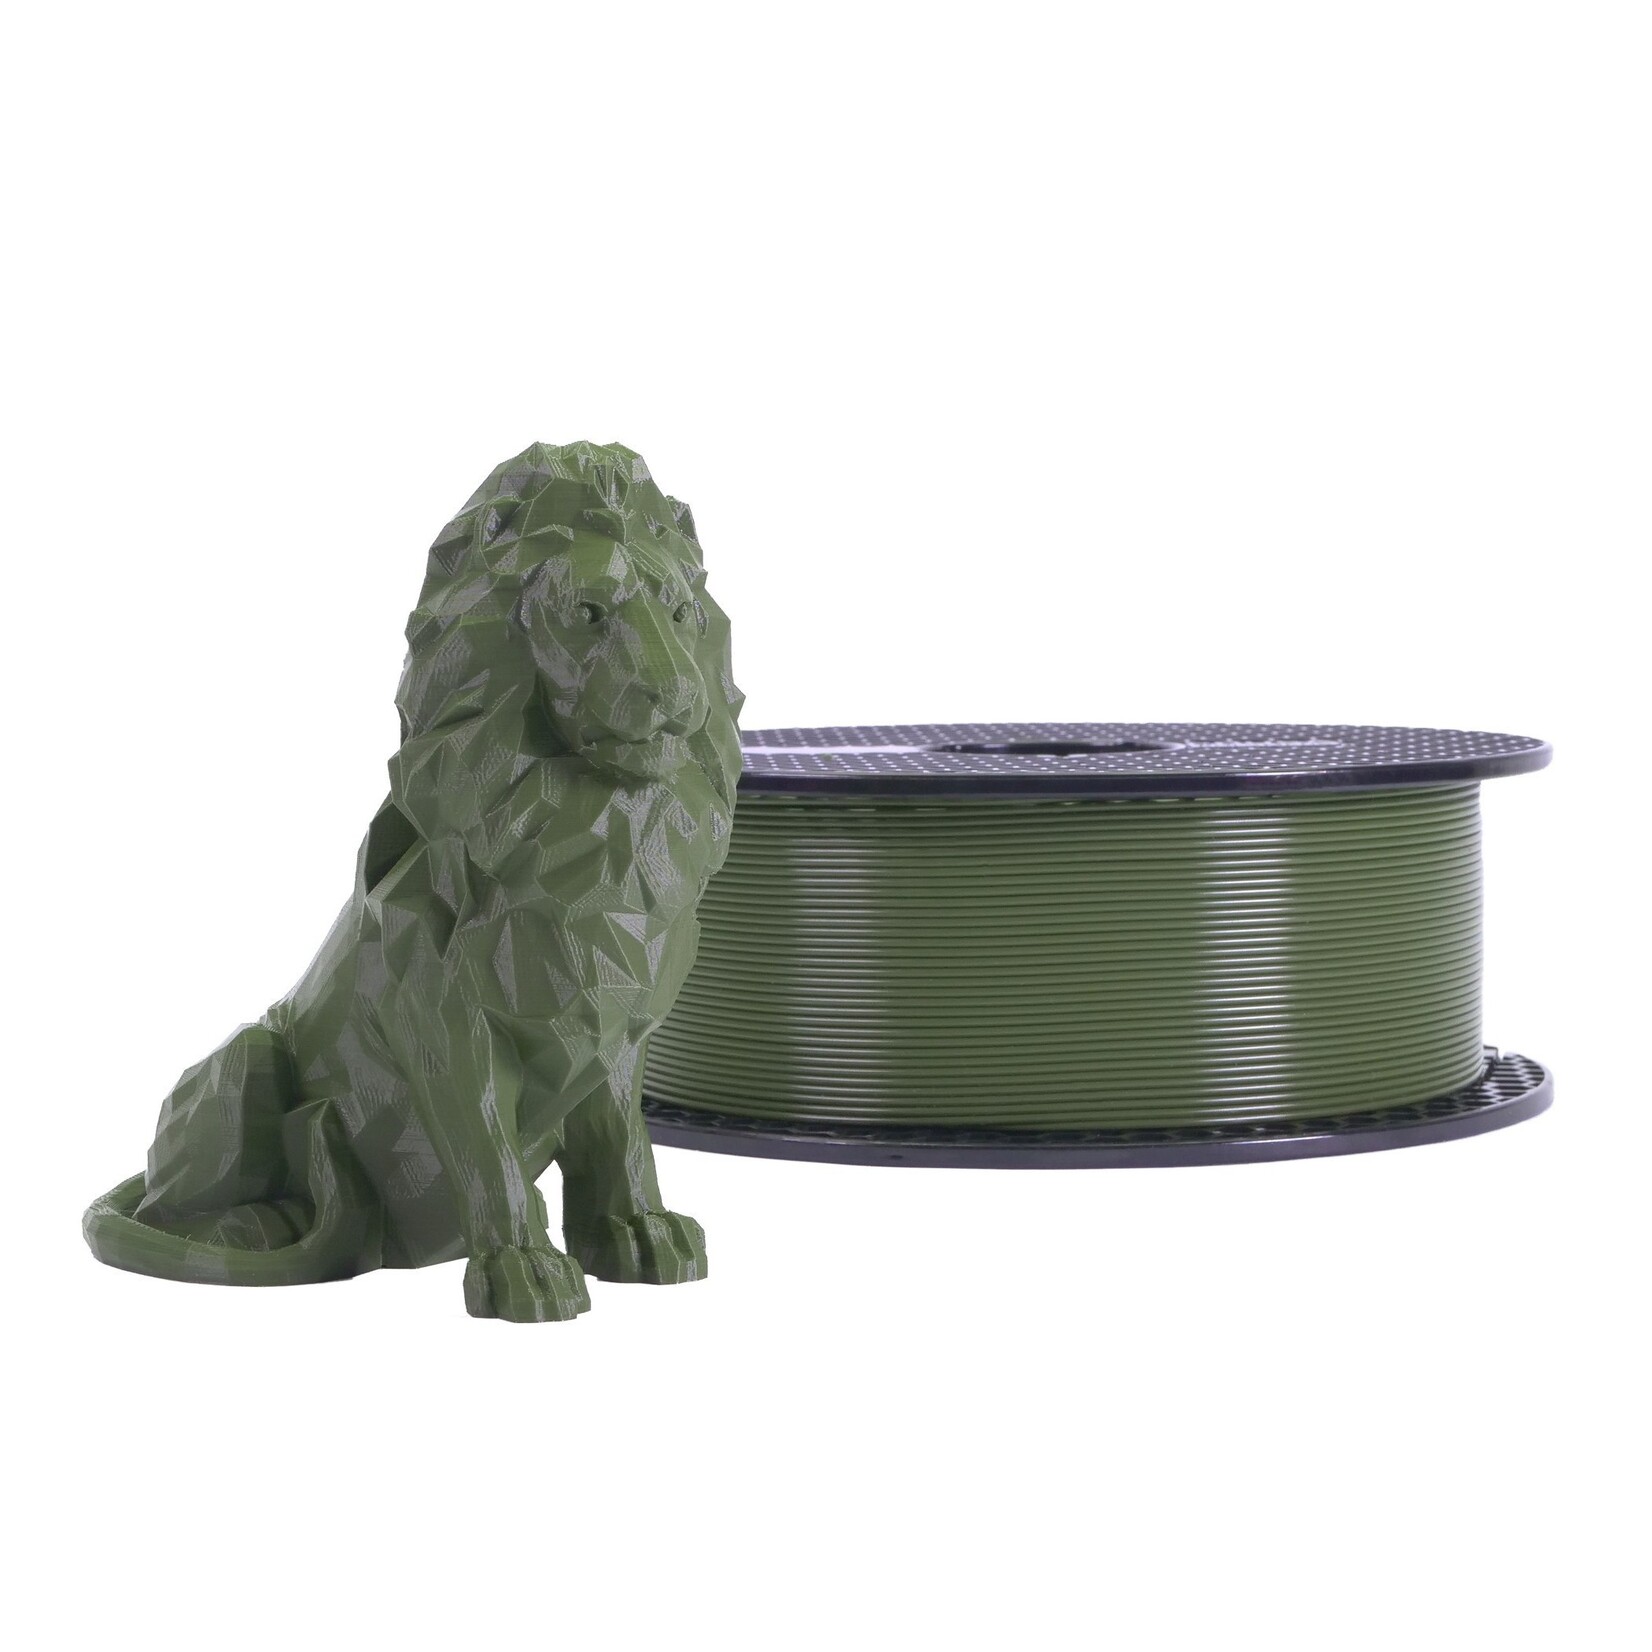 Prusa Research 1.75mm PLA 3d printer filament Prusament army green 1kg